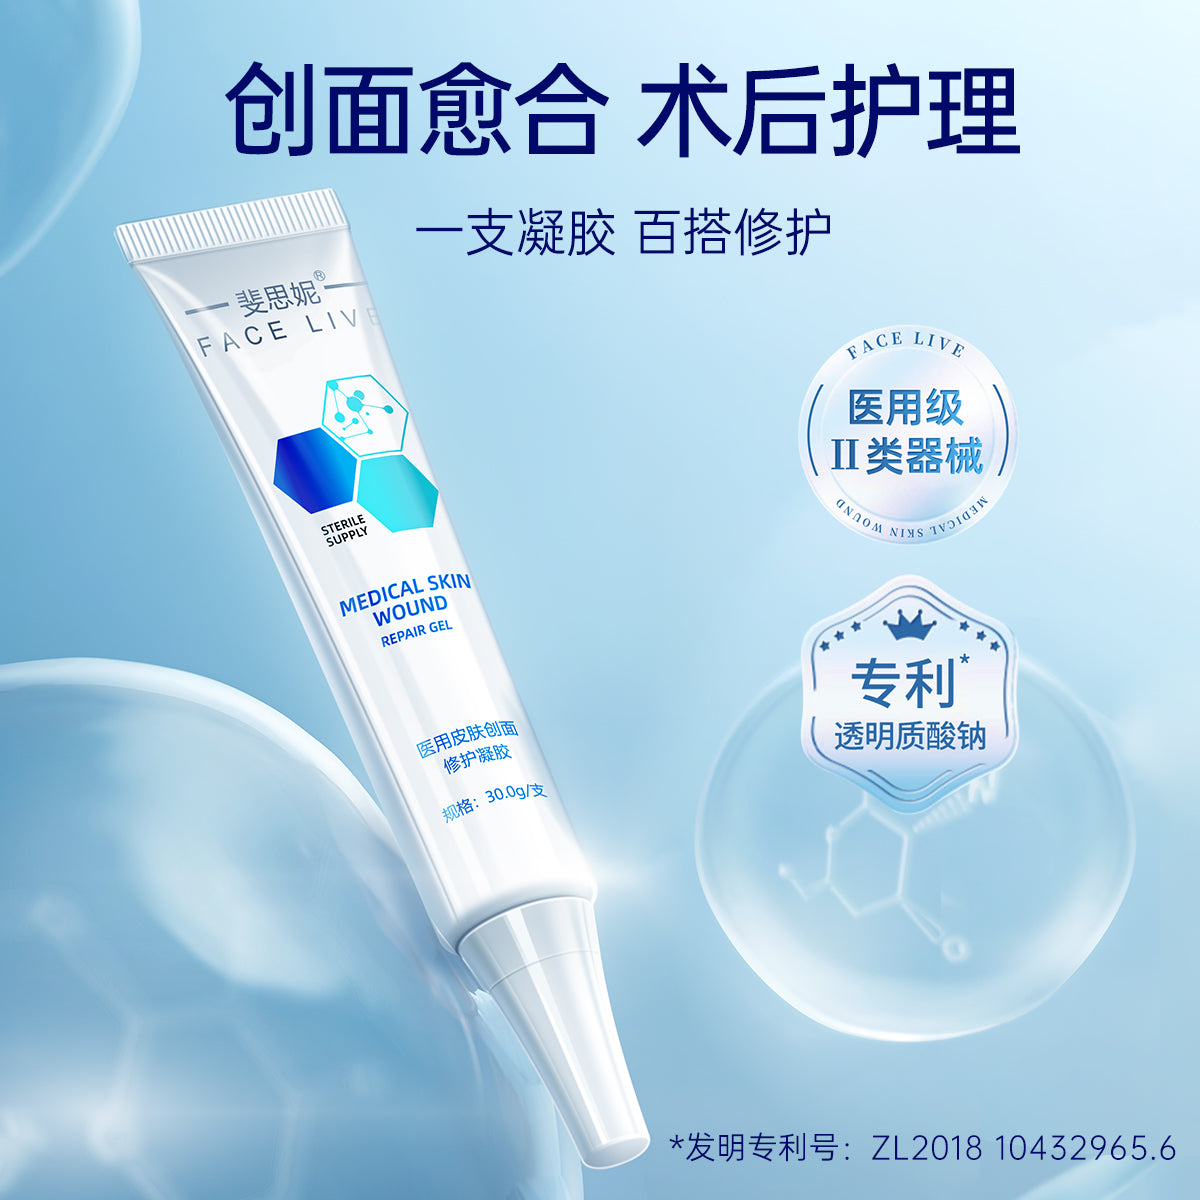 Face Live Skin Repair Hyaluronate Repair Gel 30g 斐思妮透明质酸钠修复凝胶